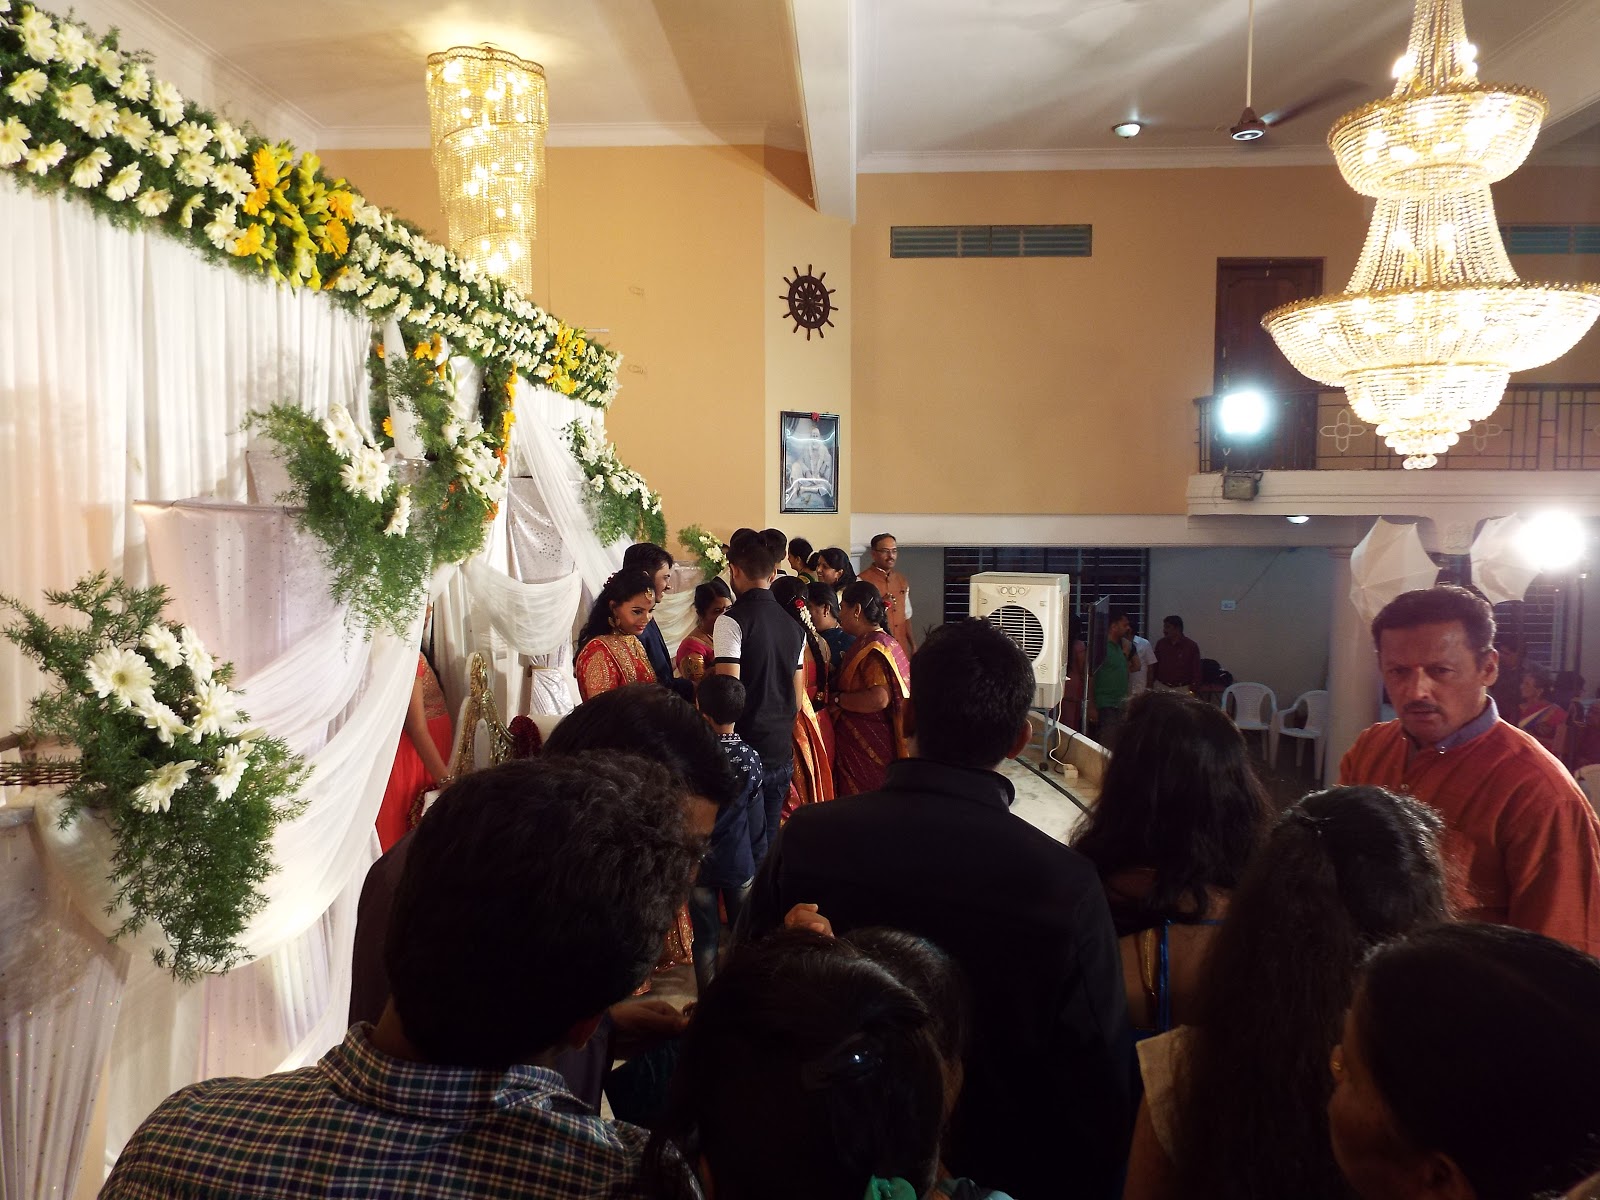 インドのイメージup ブログ インドの結婚式はド派手で豪華で参列者多すぎ 日本とは違う 海外の挙式 インドの挙式事情をレポート